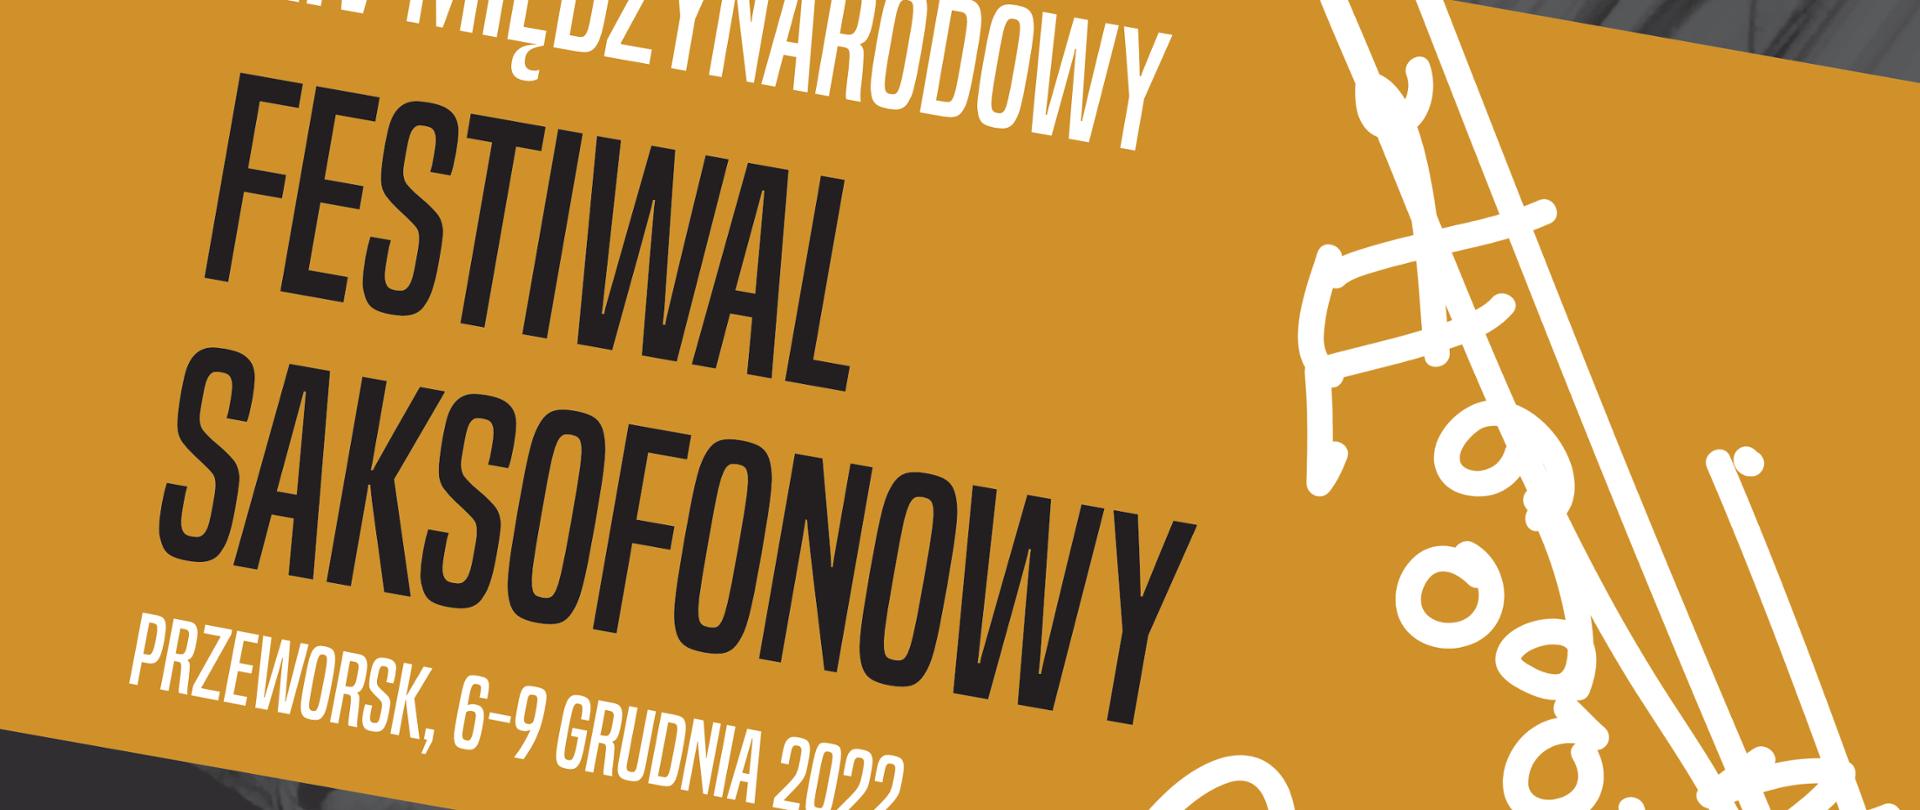 Plakat szaro-pomarańczowy informujący o Międzynarodowym Festiwalu Saksofonowym - Przeworsk 2022 